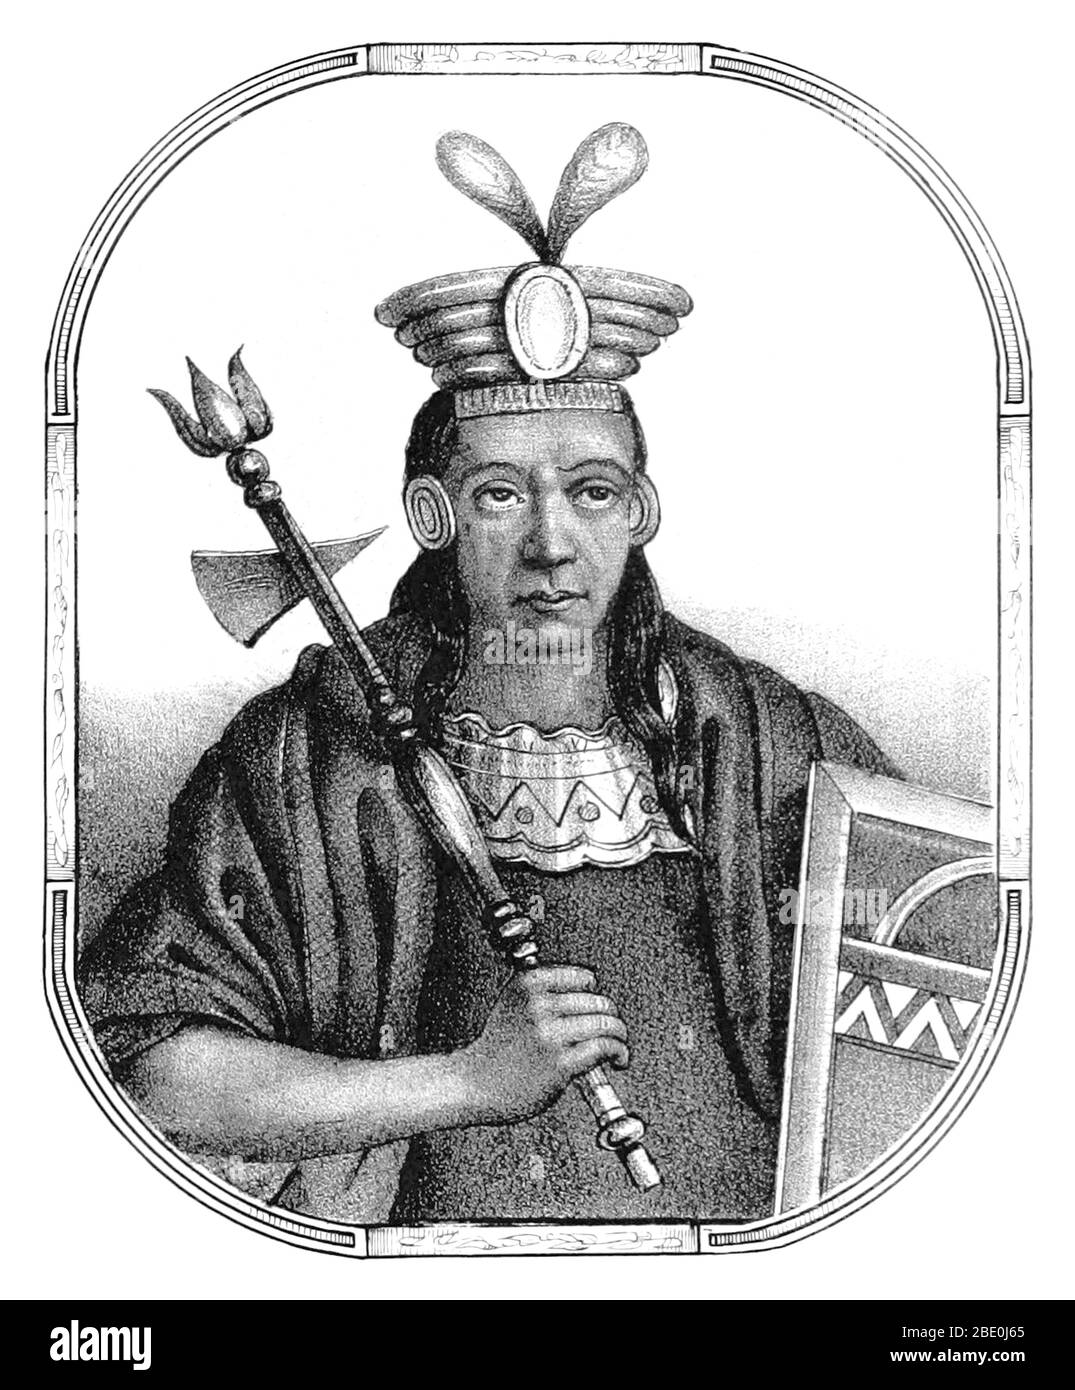 Mayta Cápac (Mayta Qhapaq Inka) était la quatrième Sapa Inca du Royaume de Cuzco (commençant vers 1290) et membre de la dynastie des Hurins. Les chroniqueurs le décrivent comme un grand guerrier qui a conquis les territoires jusqu'au lac Titicaca, Arequipa, et Potosí. En fait, son royaume était encore limité à la vallée de Cuzco. En 1134, Mayta Cápac a placé les régions d'Arequipa et Moquegua sous le contrôle de l'empire Inca. Sa grande féole militaire était la subjugation des tribus des Alcabisas et des Culunchimas. Image tirée de la page 59 de 'Recuerdos de la Monarquia Peruana, ó bosquejo de la historia Banque D'Images